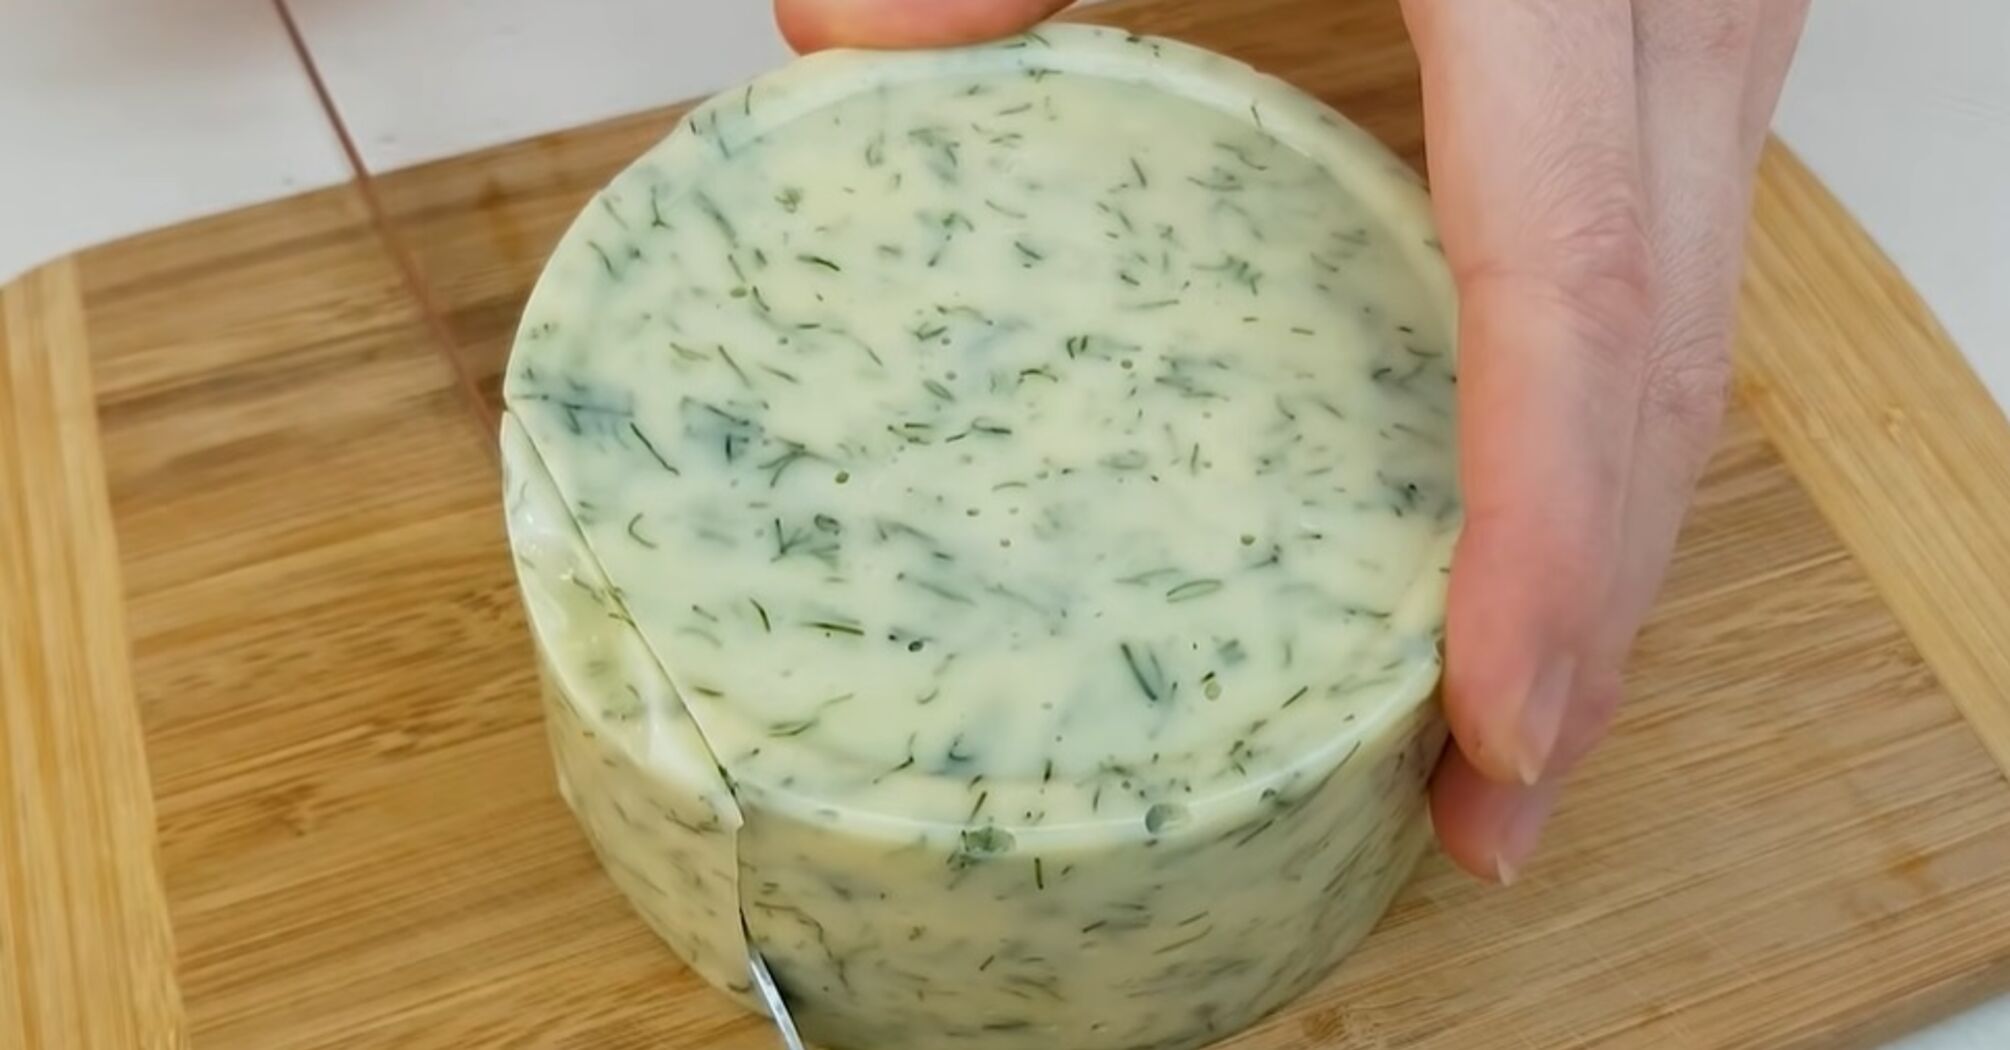 4 ингредиента и 10 минут работы: как приготовить вкусный домашний сыр (видео)